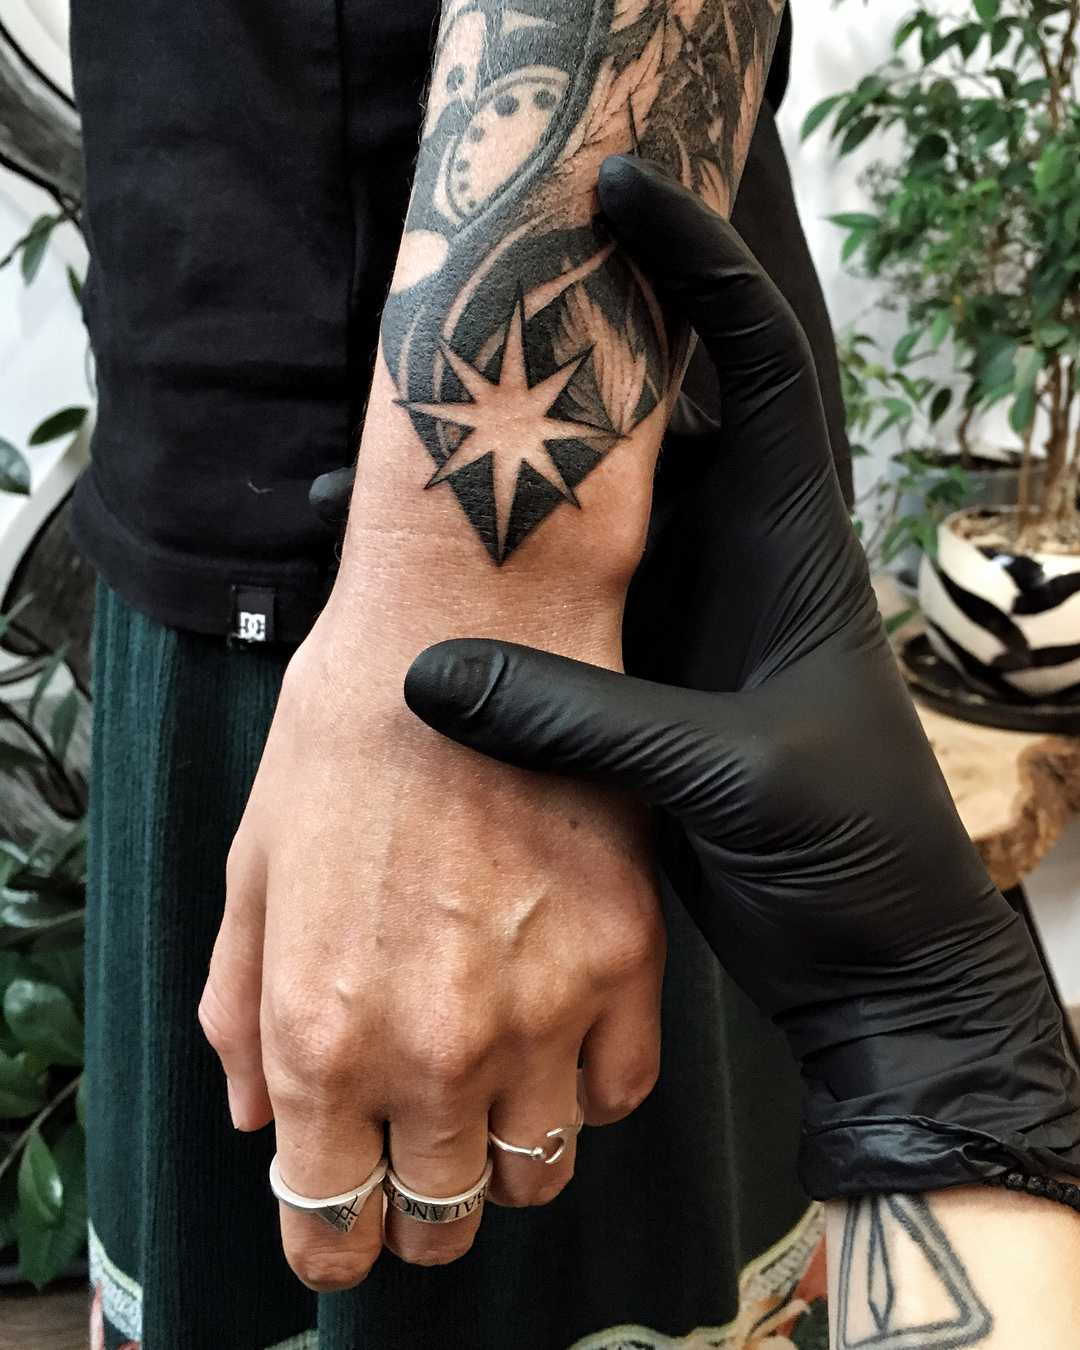 North Star tattoo on the wrist - Tattoogrid.net